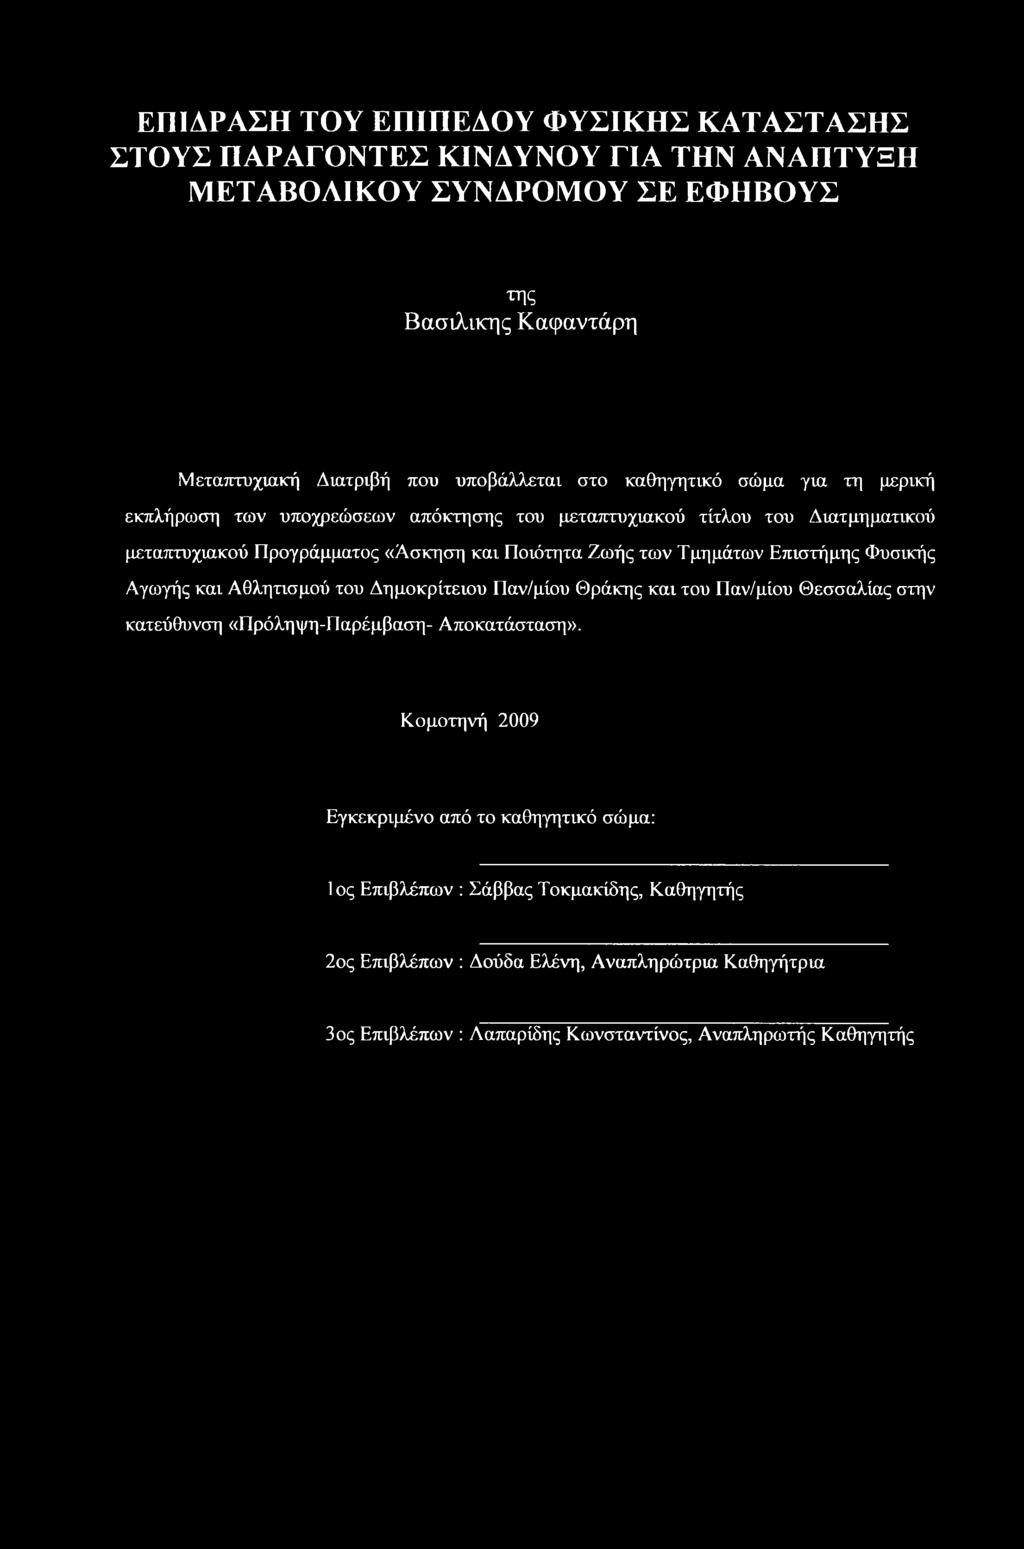 Επιστήμης Φυσικής Αγωγής και Αθλητισμού του Δημοκρίτειου Παν/μίου Θράκης και του Παν/μίου Θεσσαλίας στην κατεύθυνση «Πρόληψη-Παρέμβαση- Αποκατάσταση».